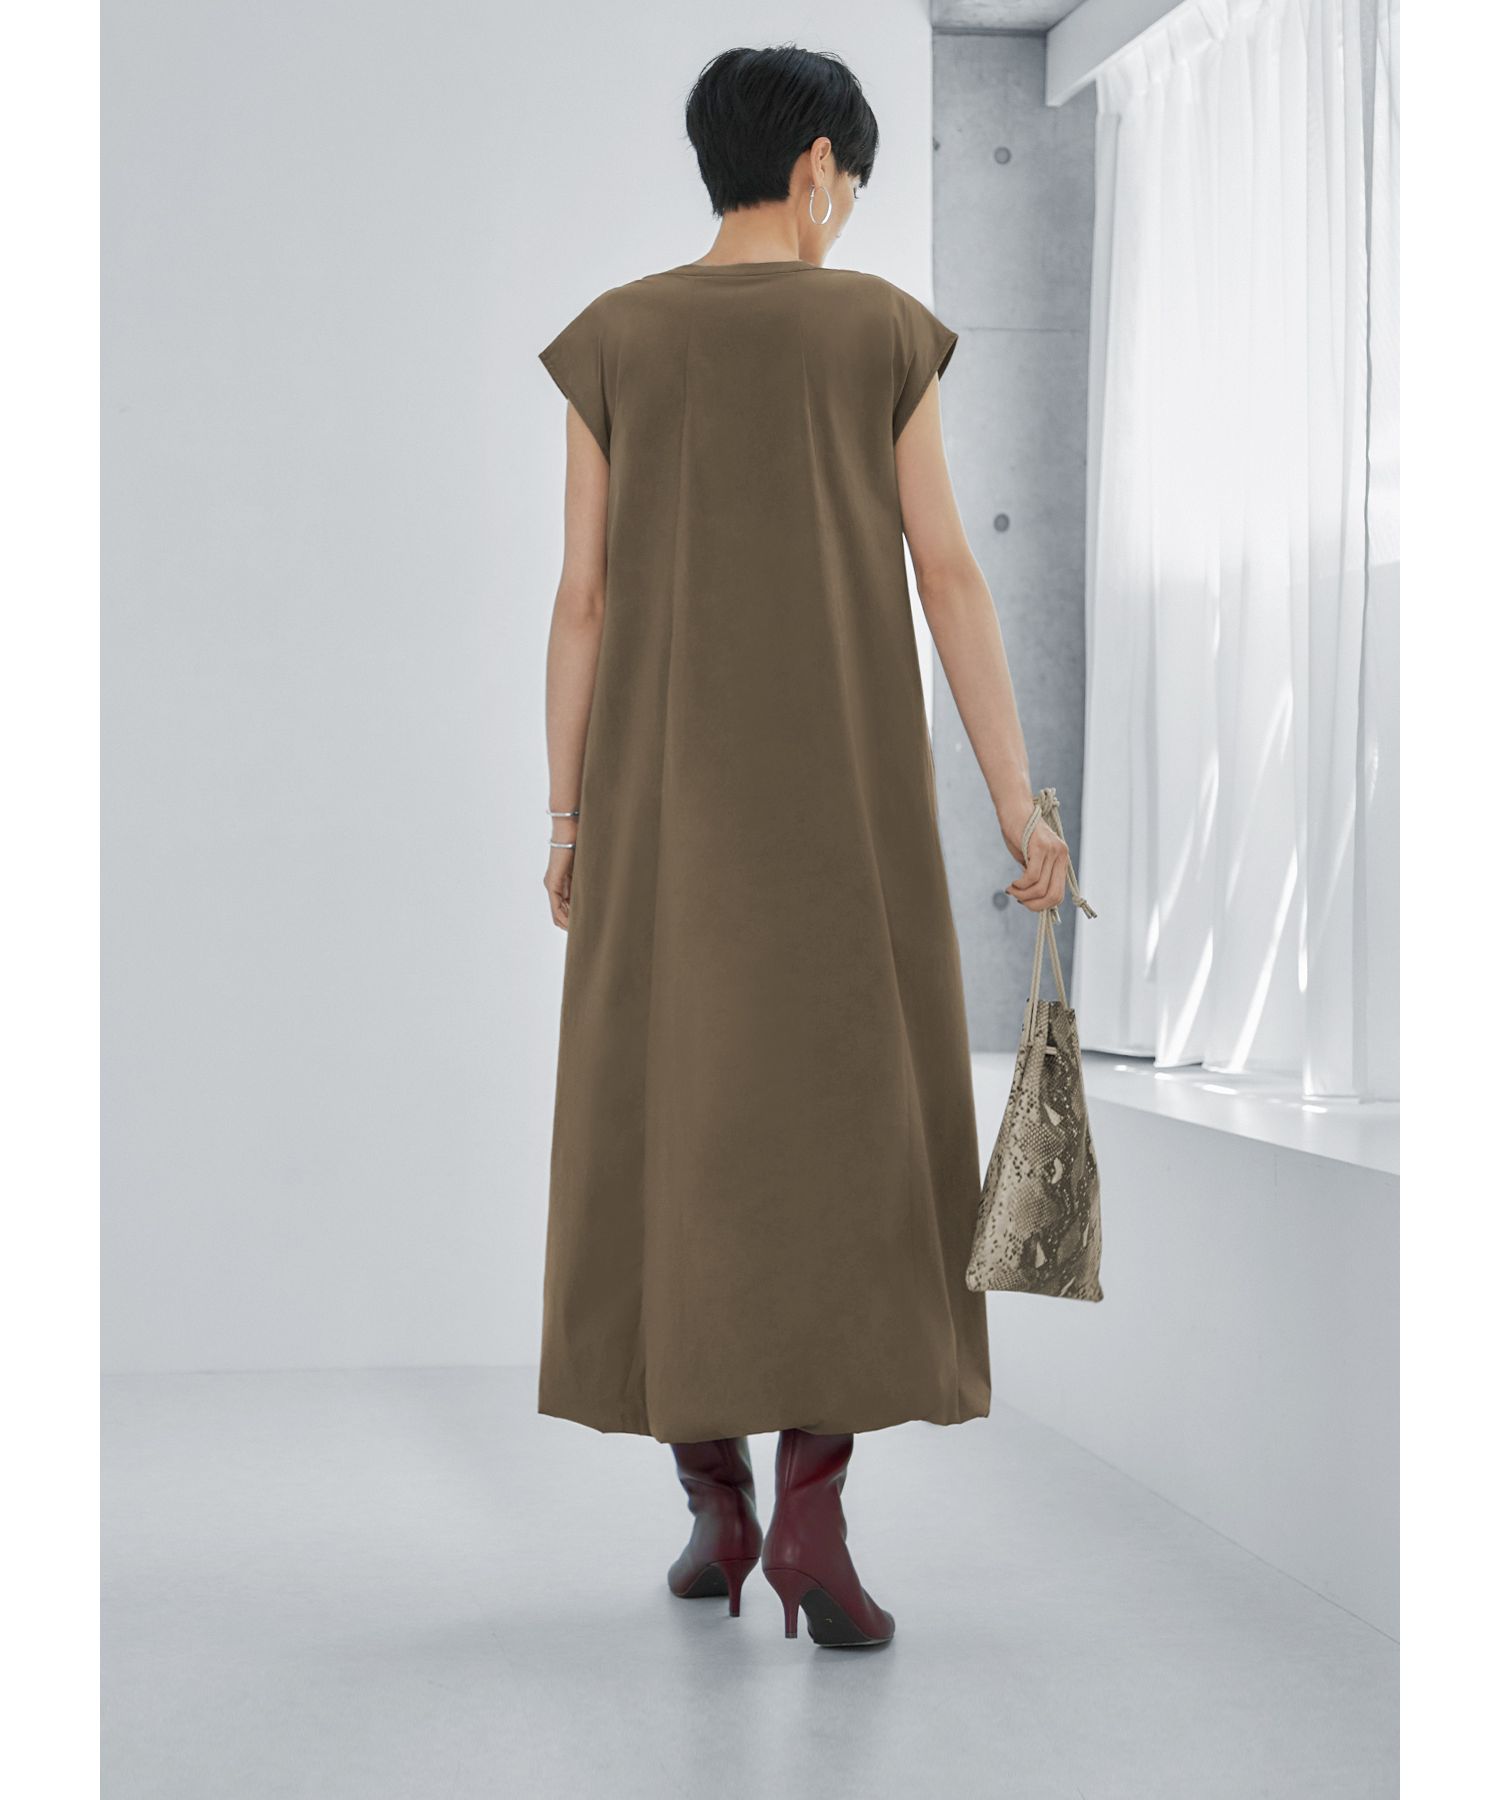 綿ナイロン裾バルーンワンピース|STYLE DELI(スタイルデリ)の通販